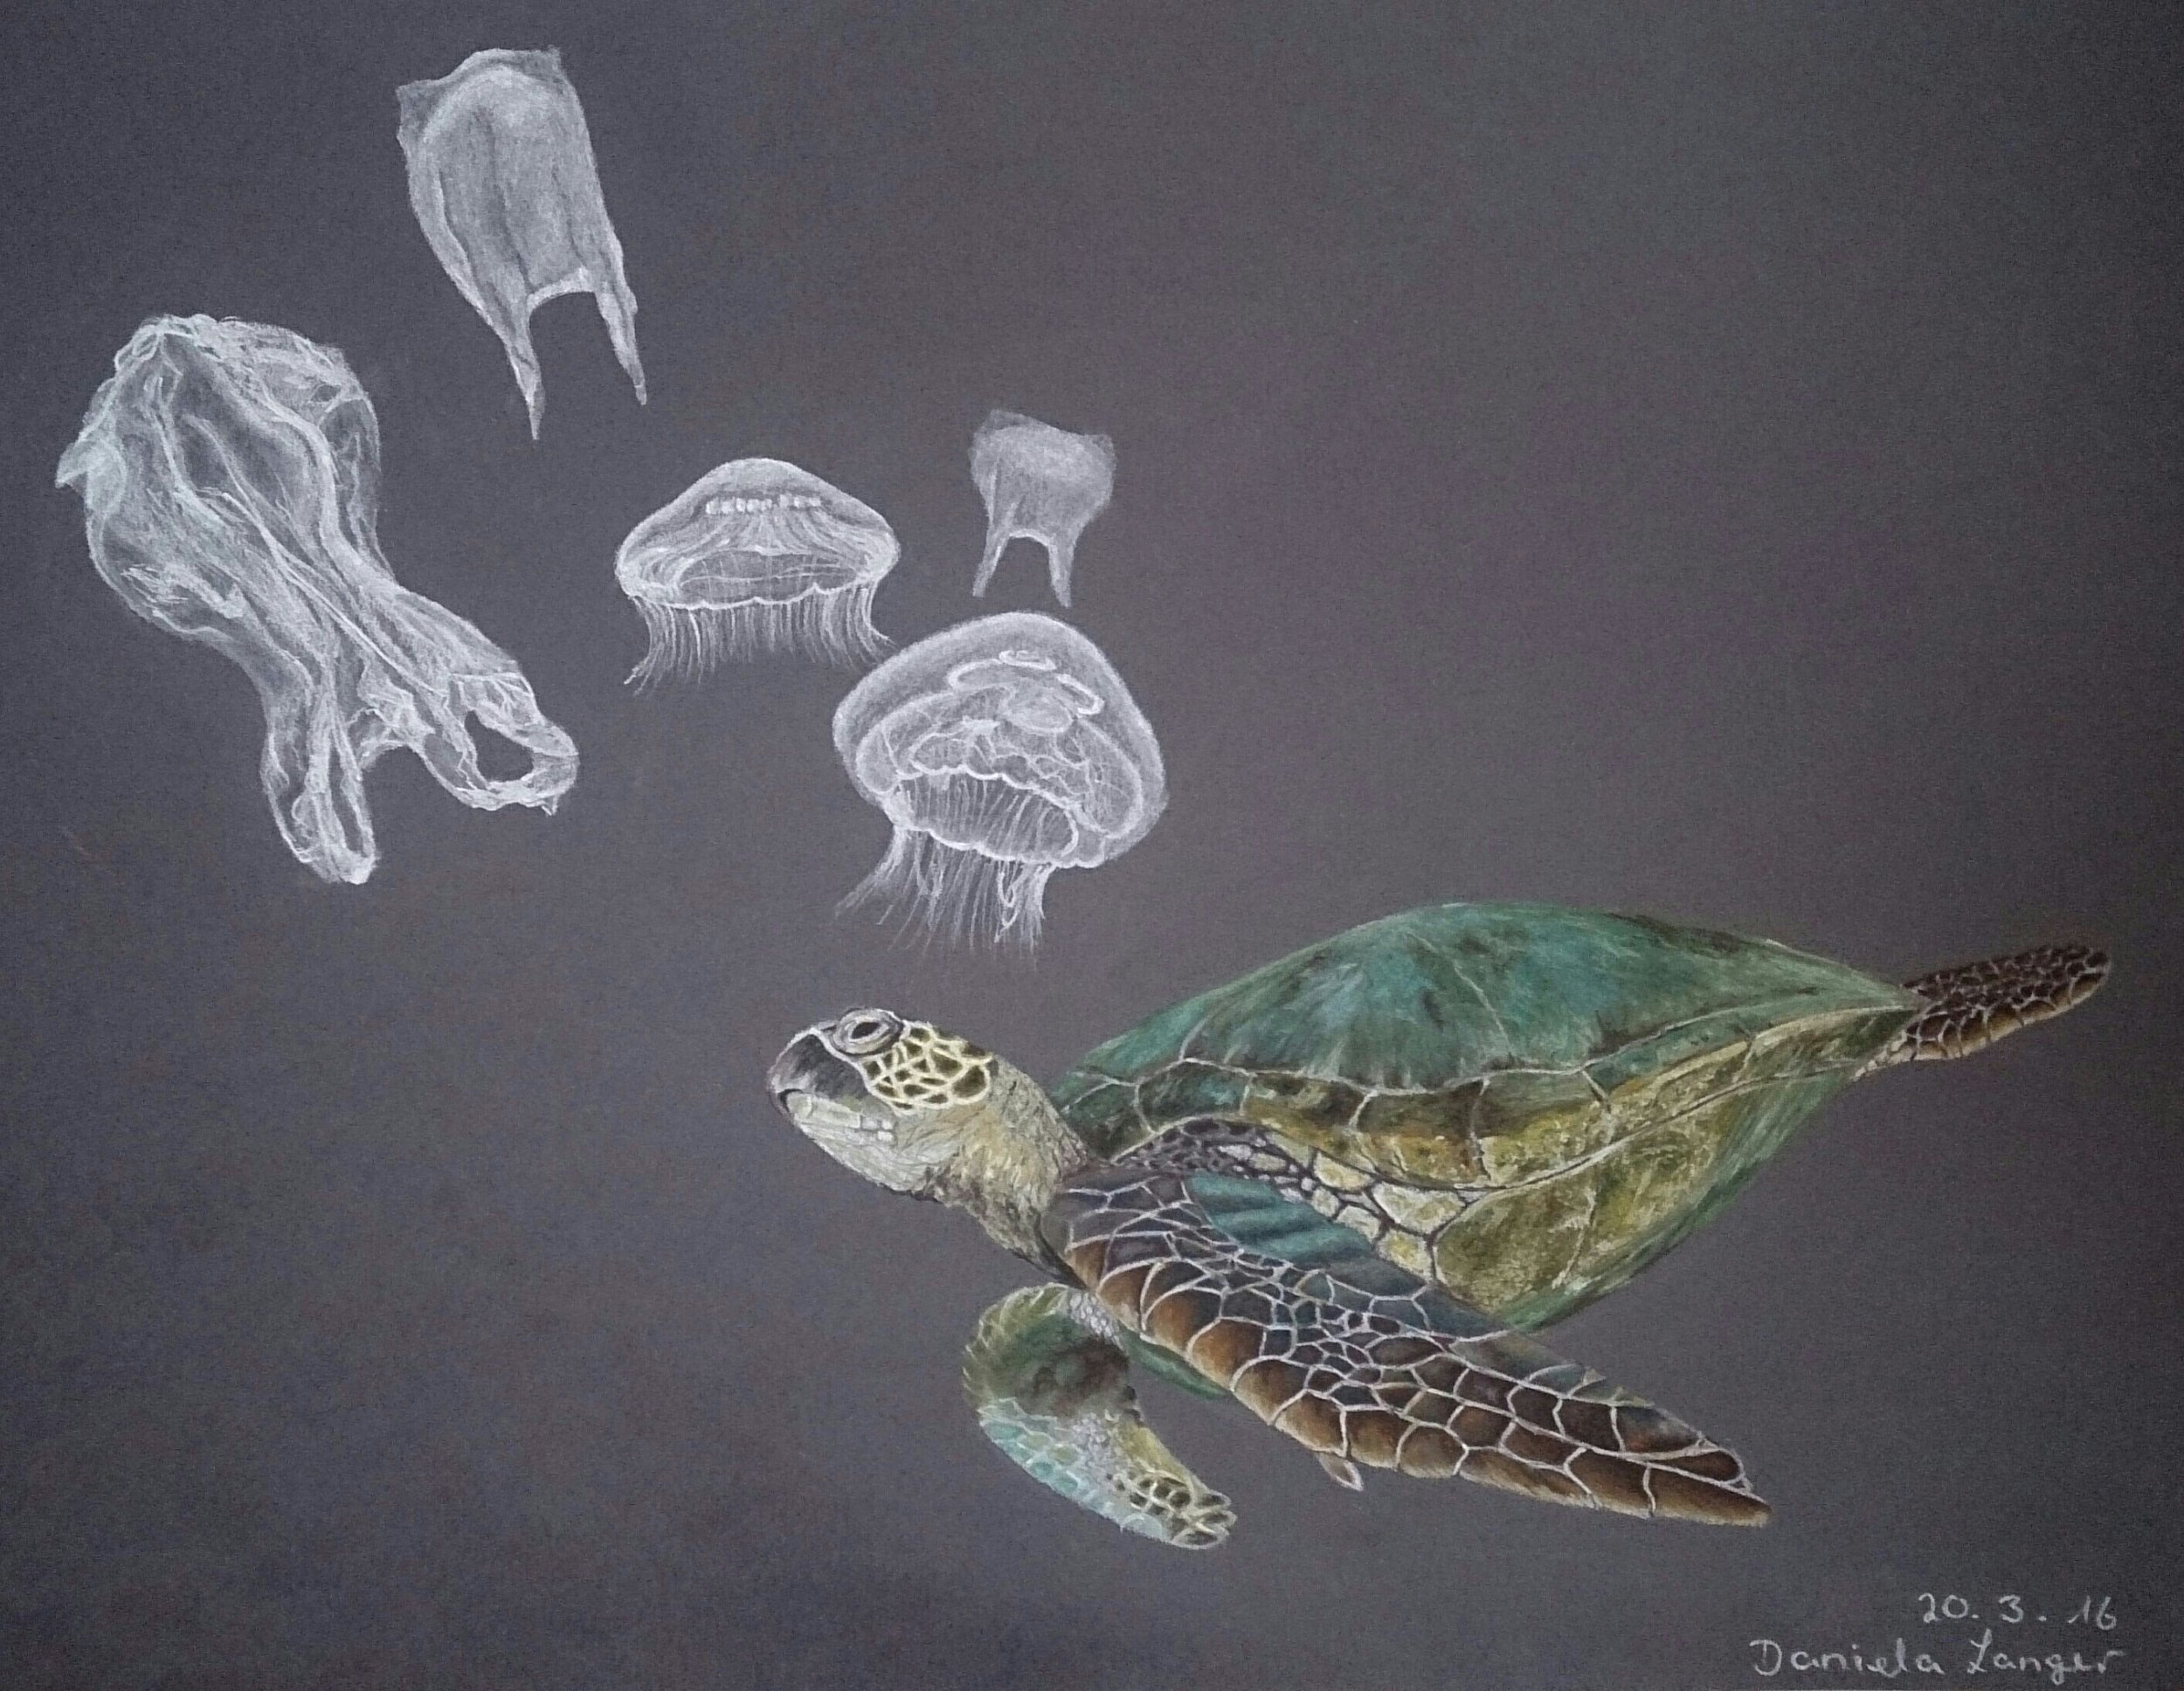 plastic and sea turtles